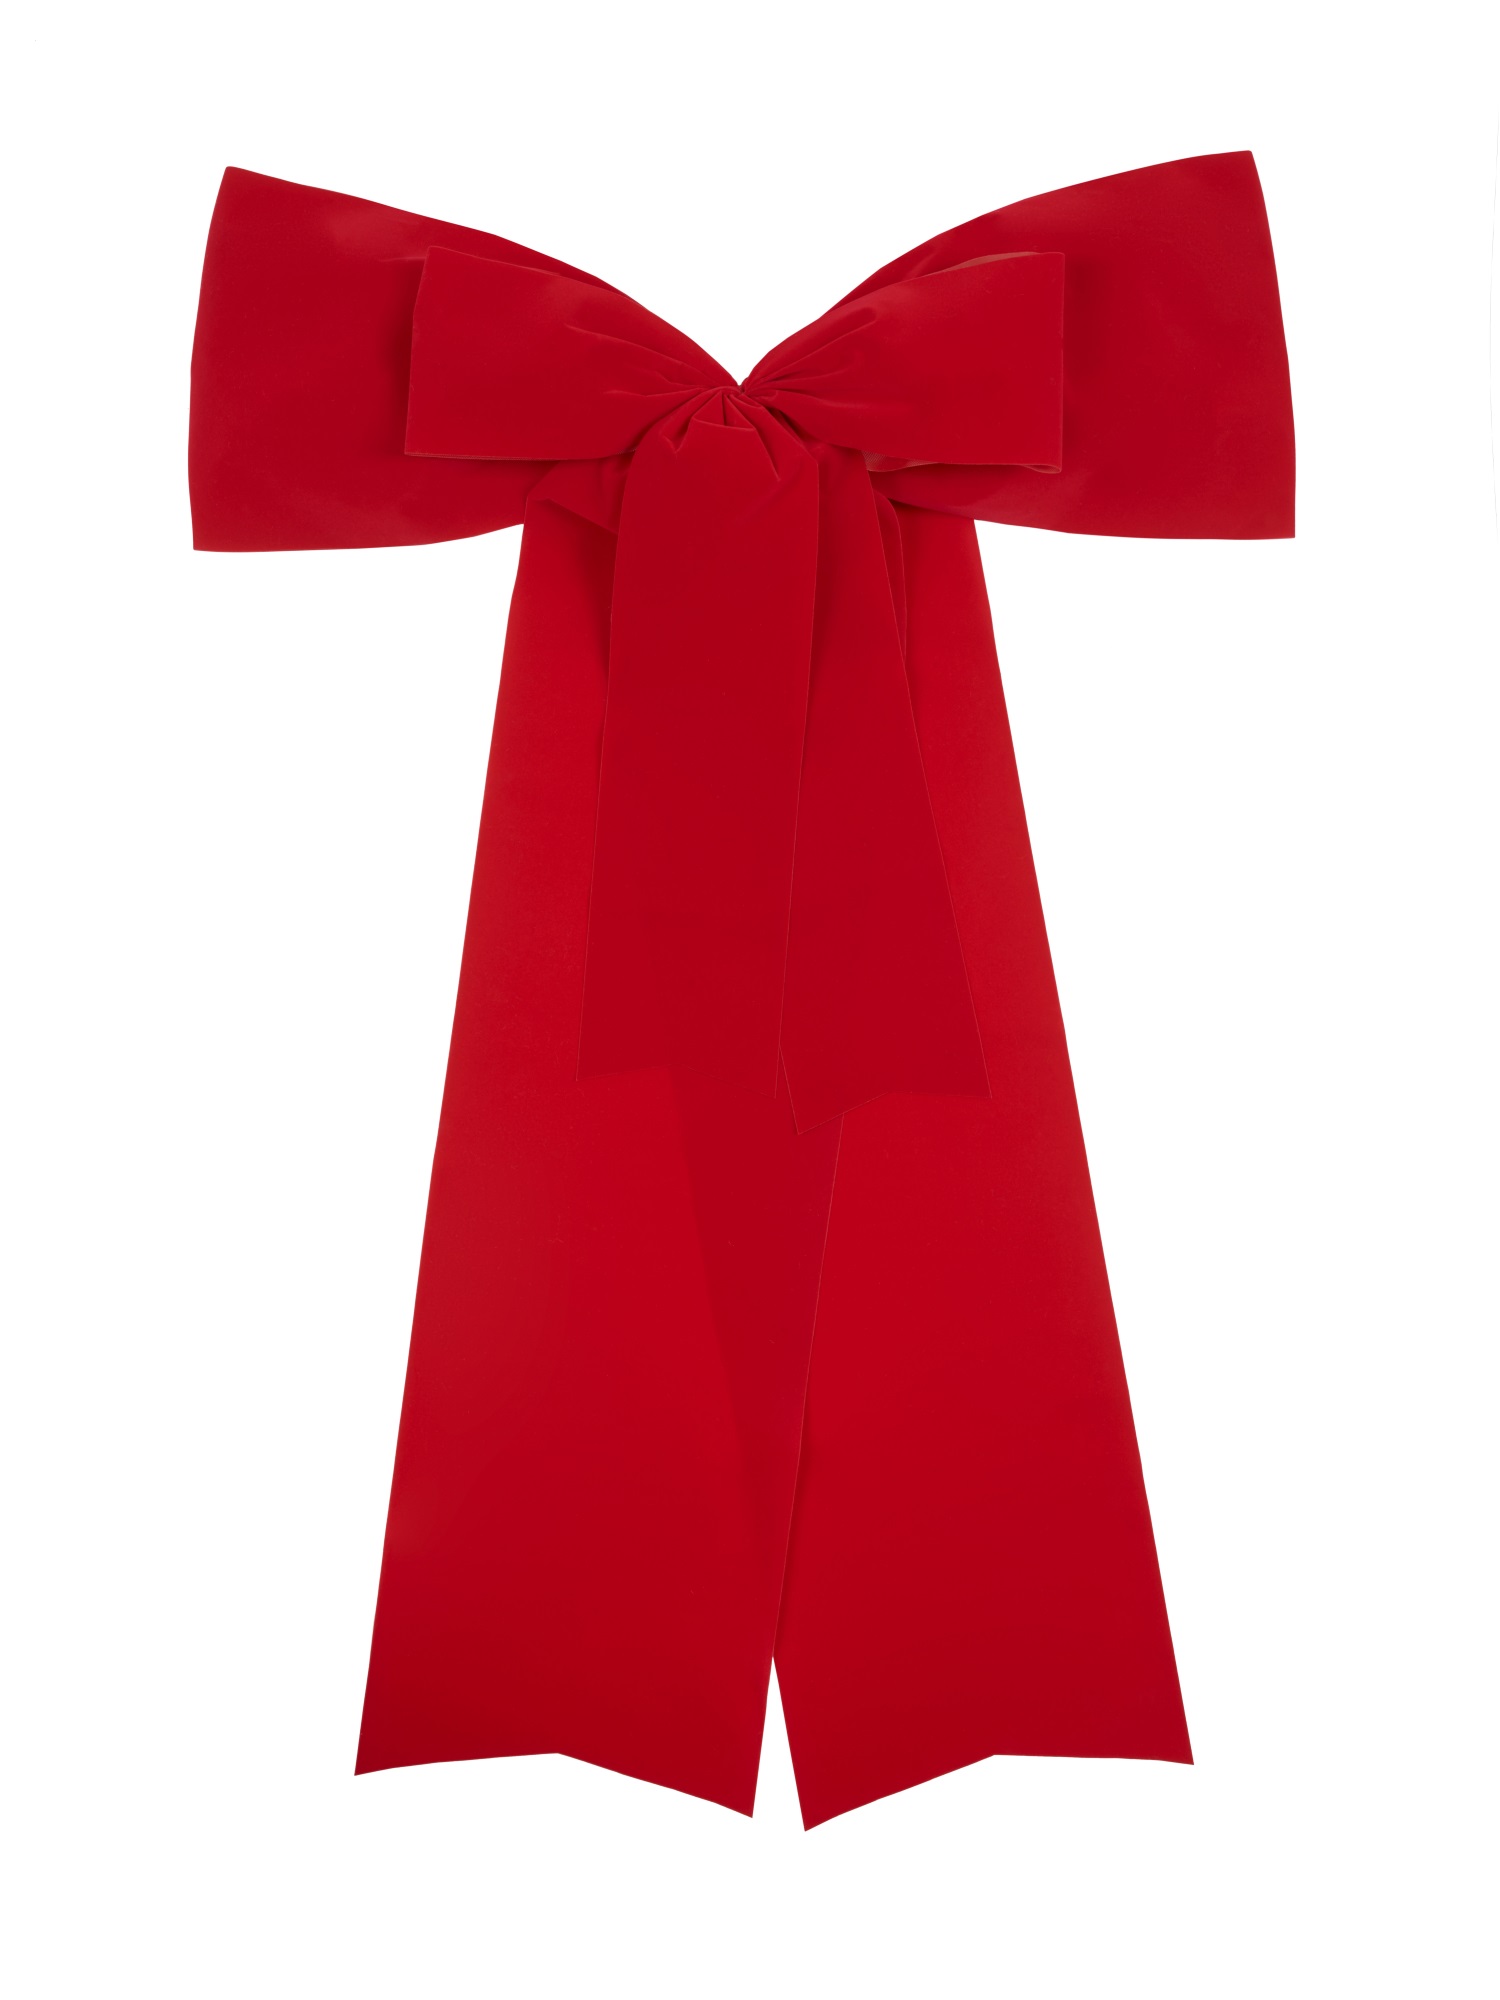 Schleifenparadies - Rote Autoschleife, Autogeschenk schleife,  Geschenkschleife für ein Auto, grosse Schleife für Autogeschenk,  Riesenschleife fürs Auto